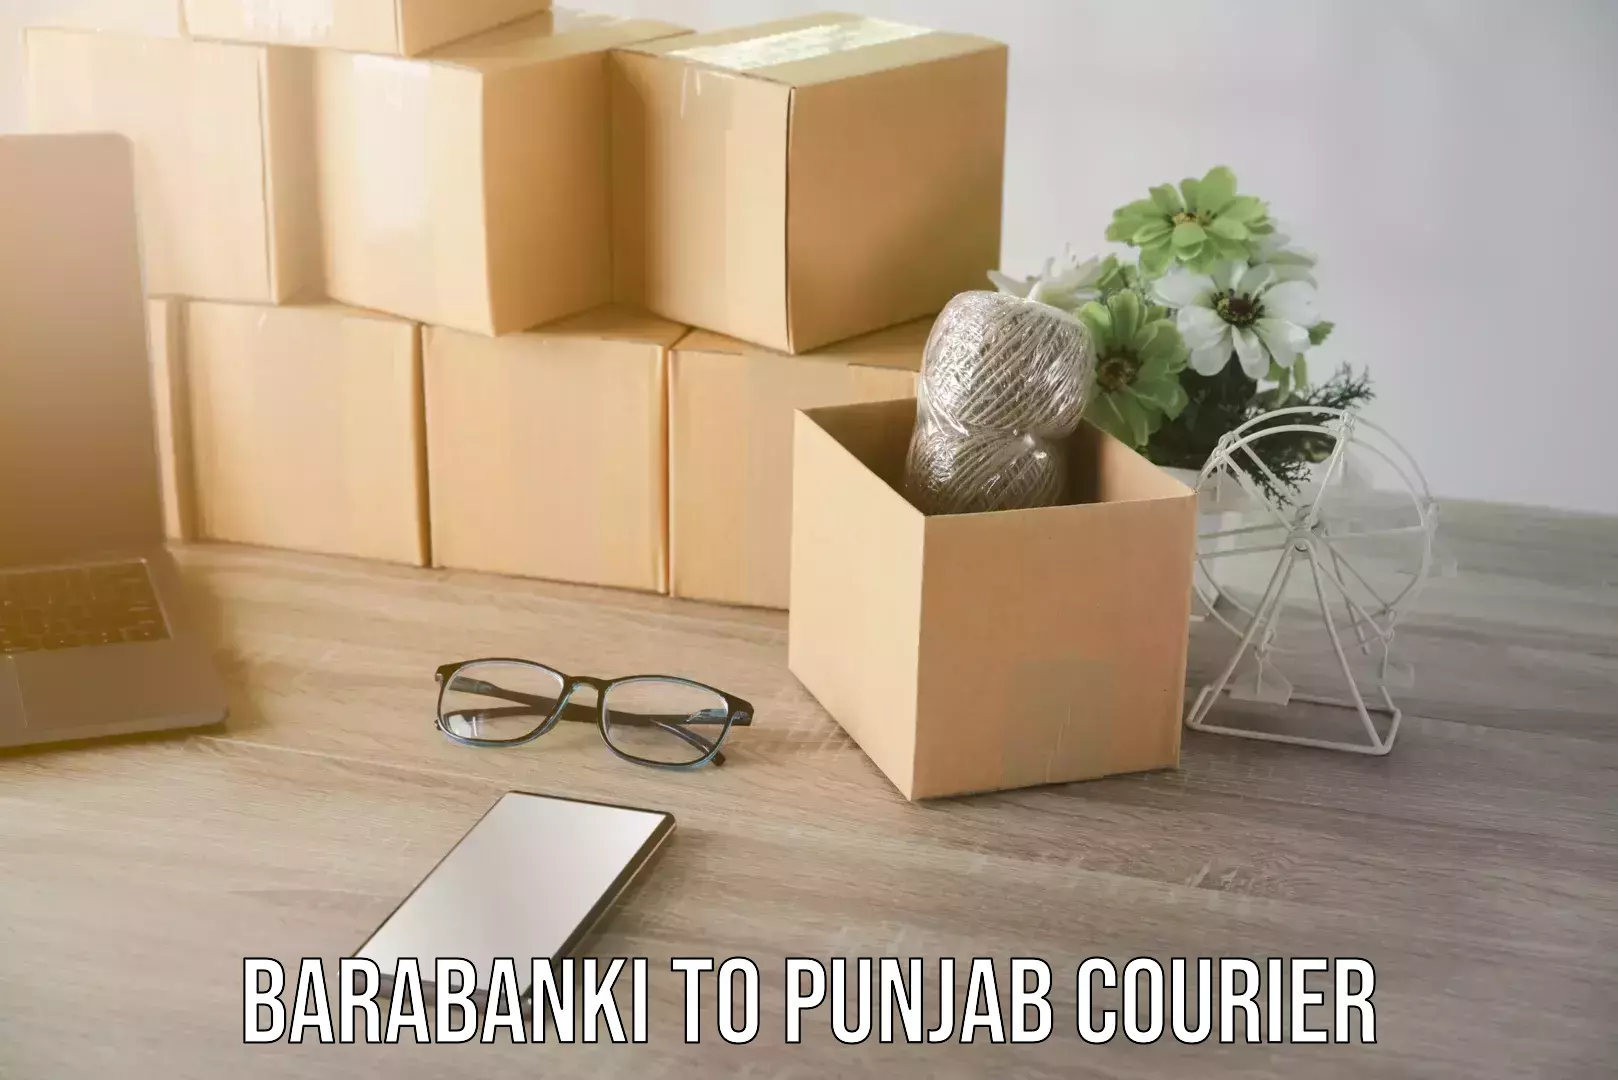 Door-to-door freight service Barabanki to Punjab